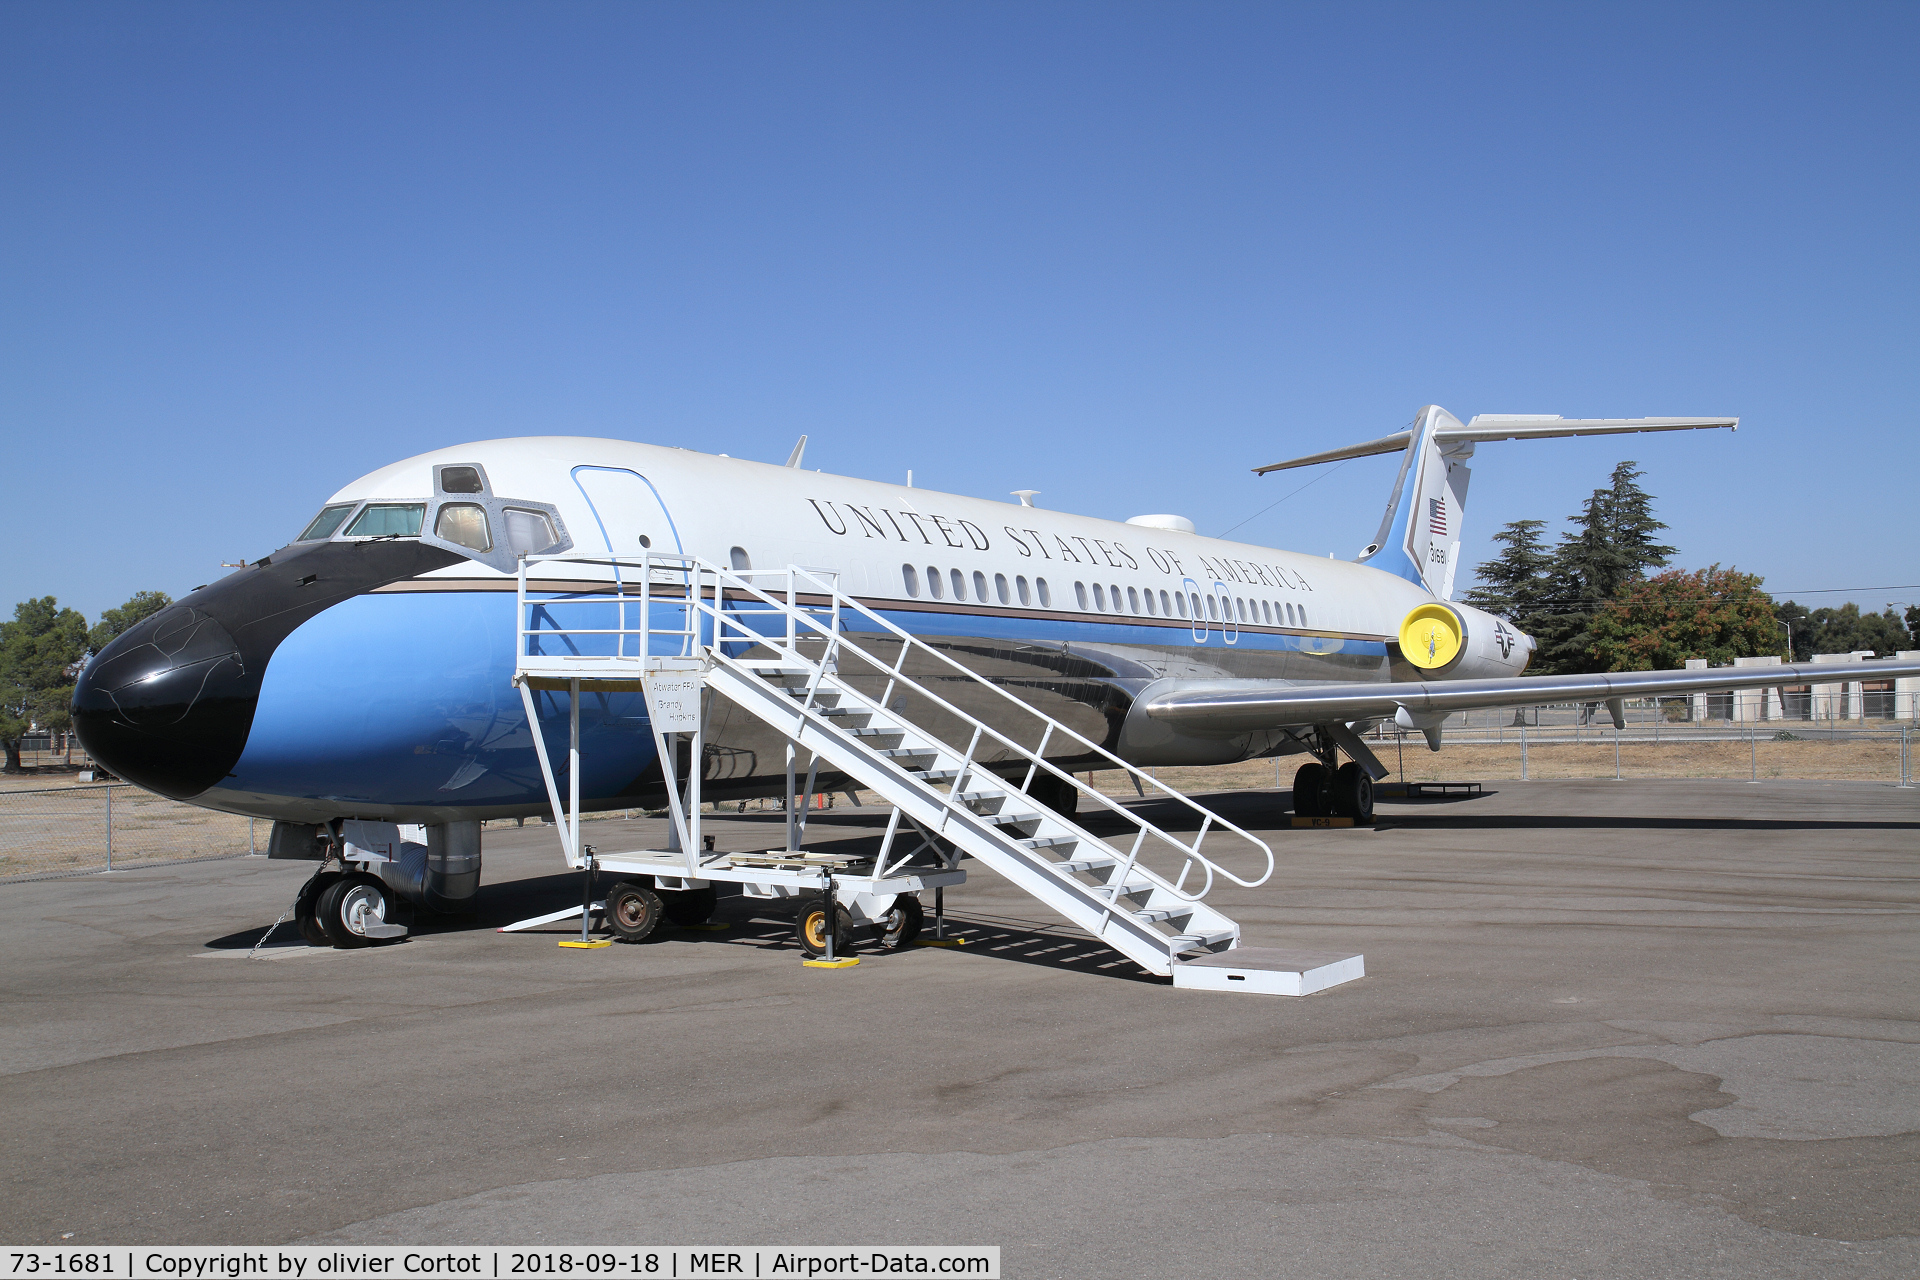 73-1681, 1973 McDonnell Douglas C-9C (DC-9-32) C/N 47668, sept 2018